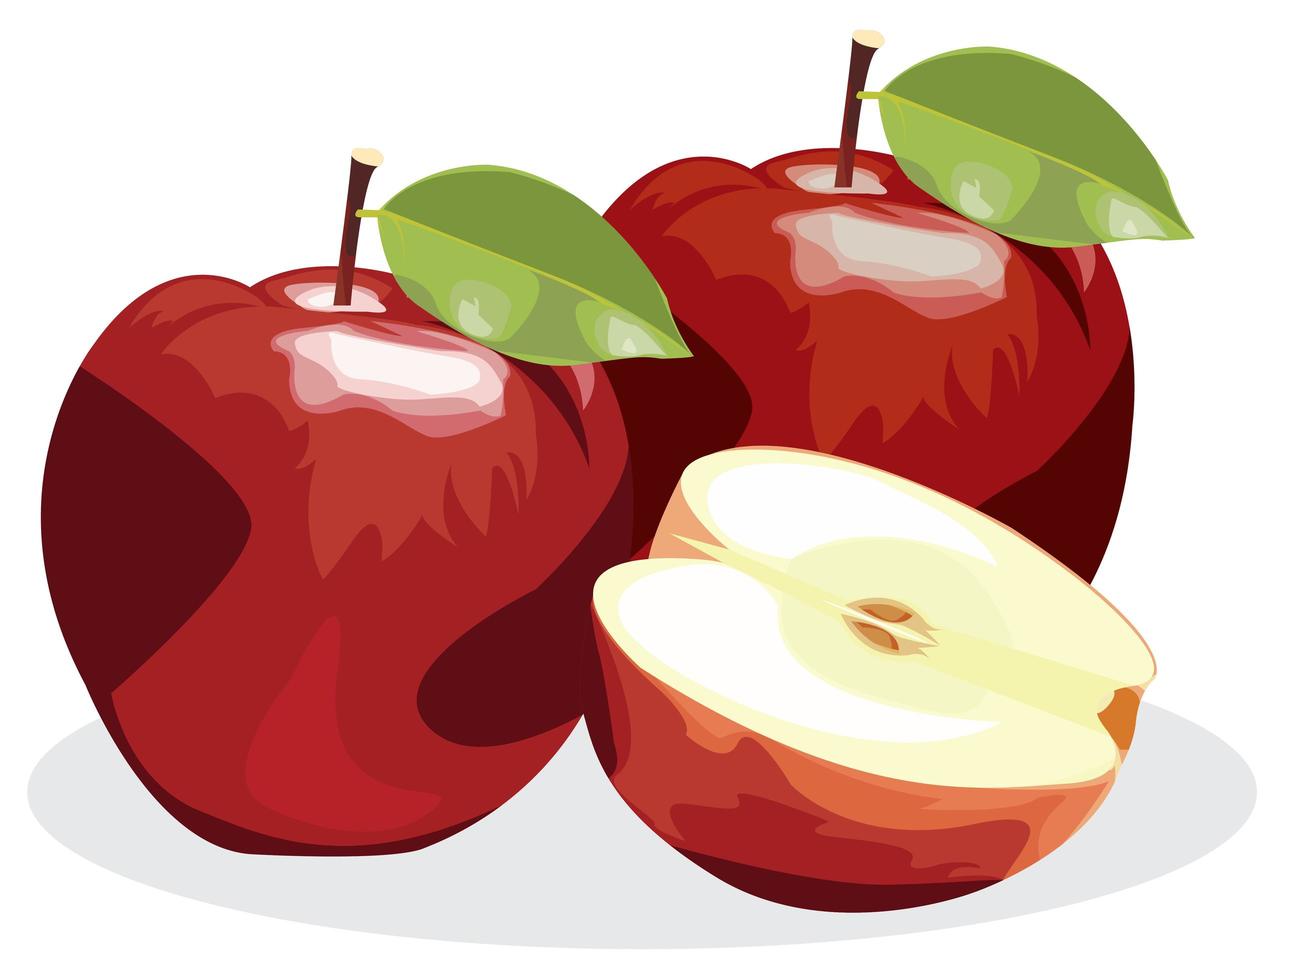 frutos maduros da maçã vermelha com metade da maçã e folha de maçã verde, isolada no fundo branco. vetor